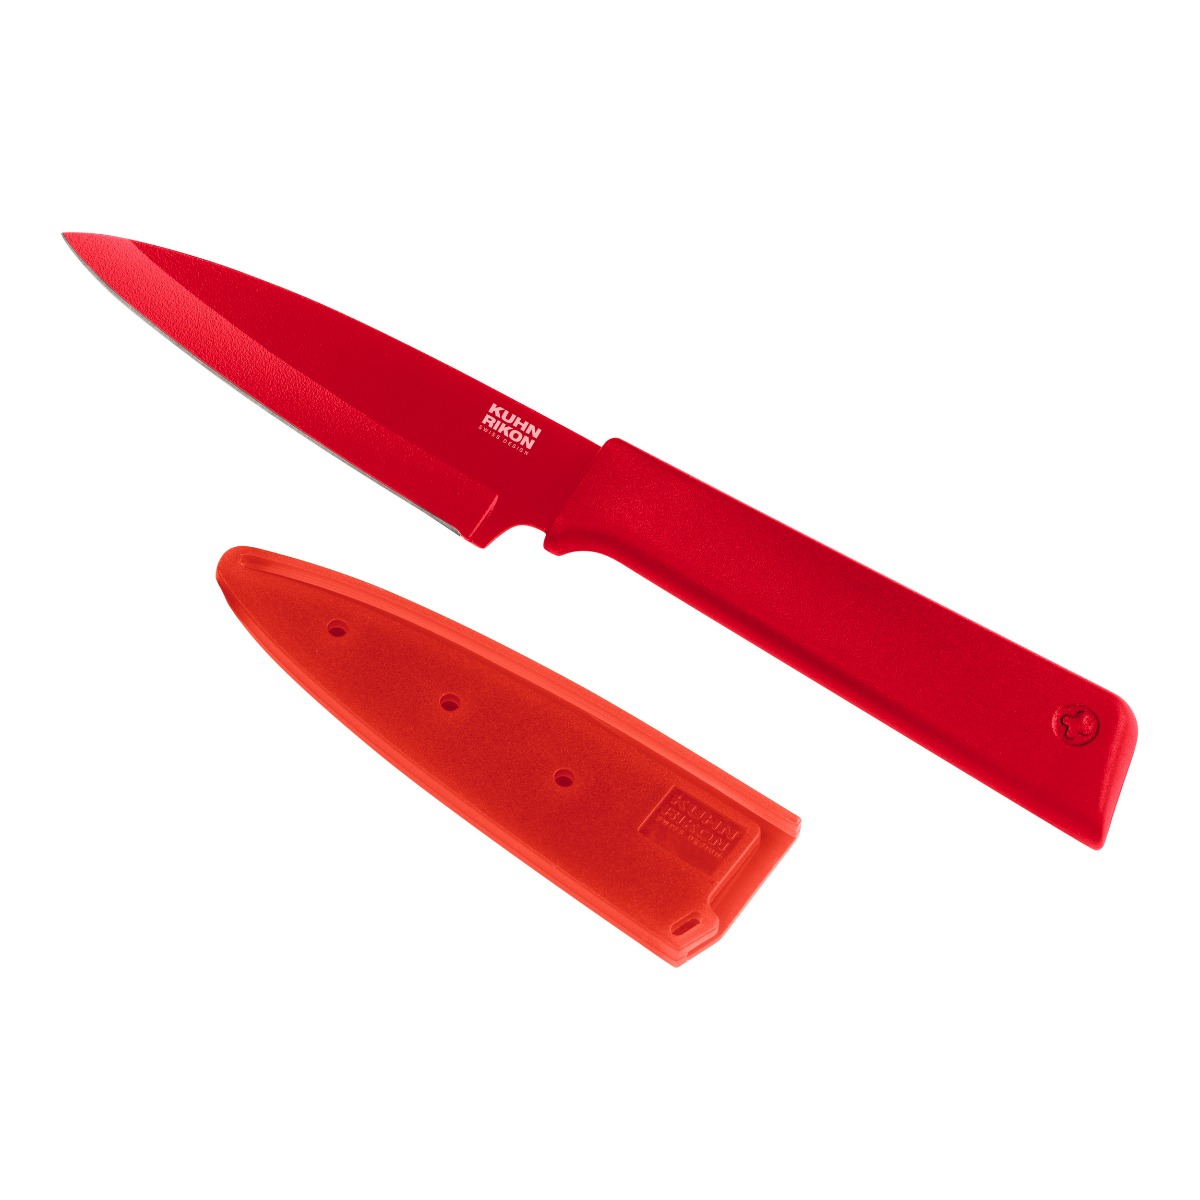 Kuhn Rikon - Colori(r)+ Paring Knife red